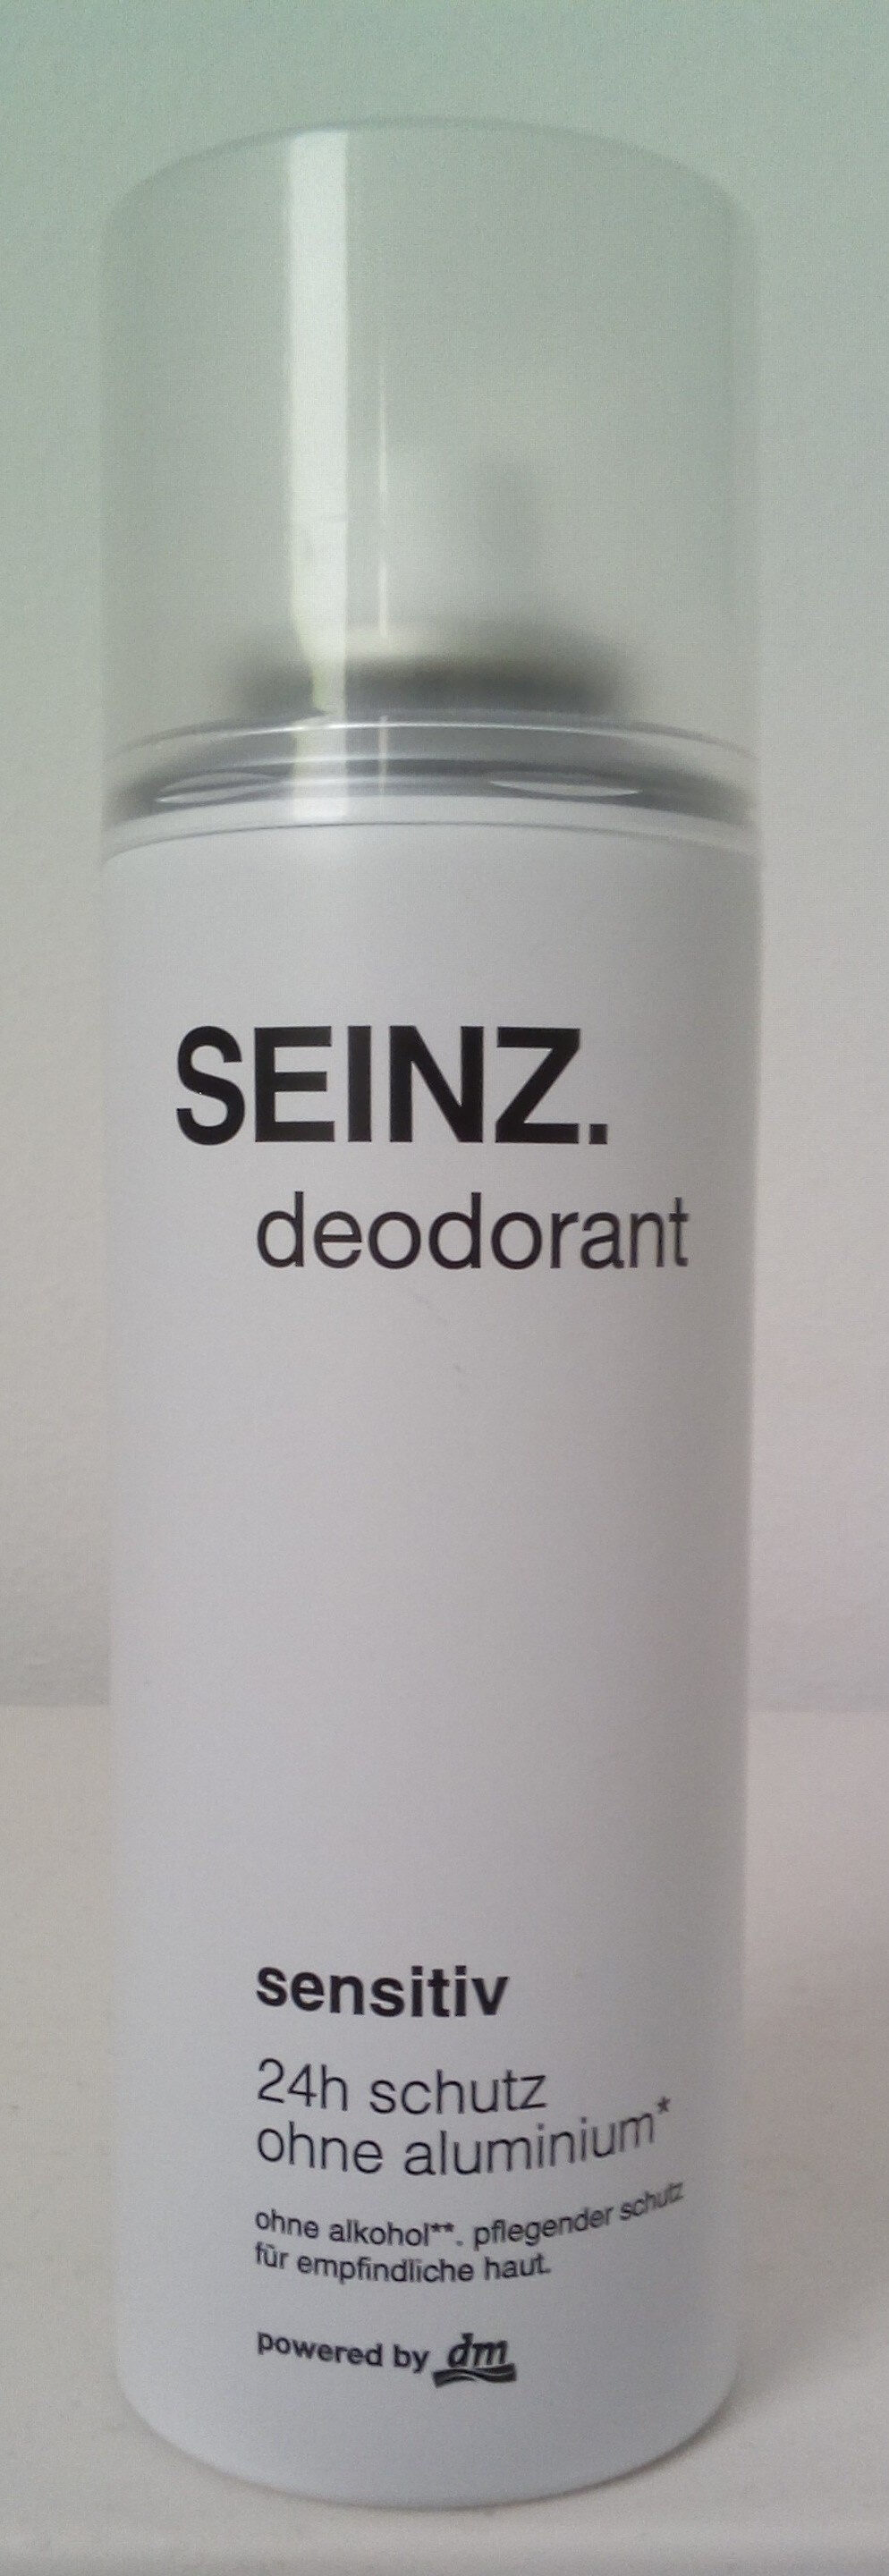 deodorant sensitiv - Produkt - de